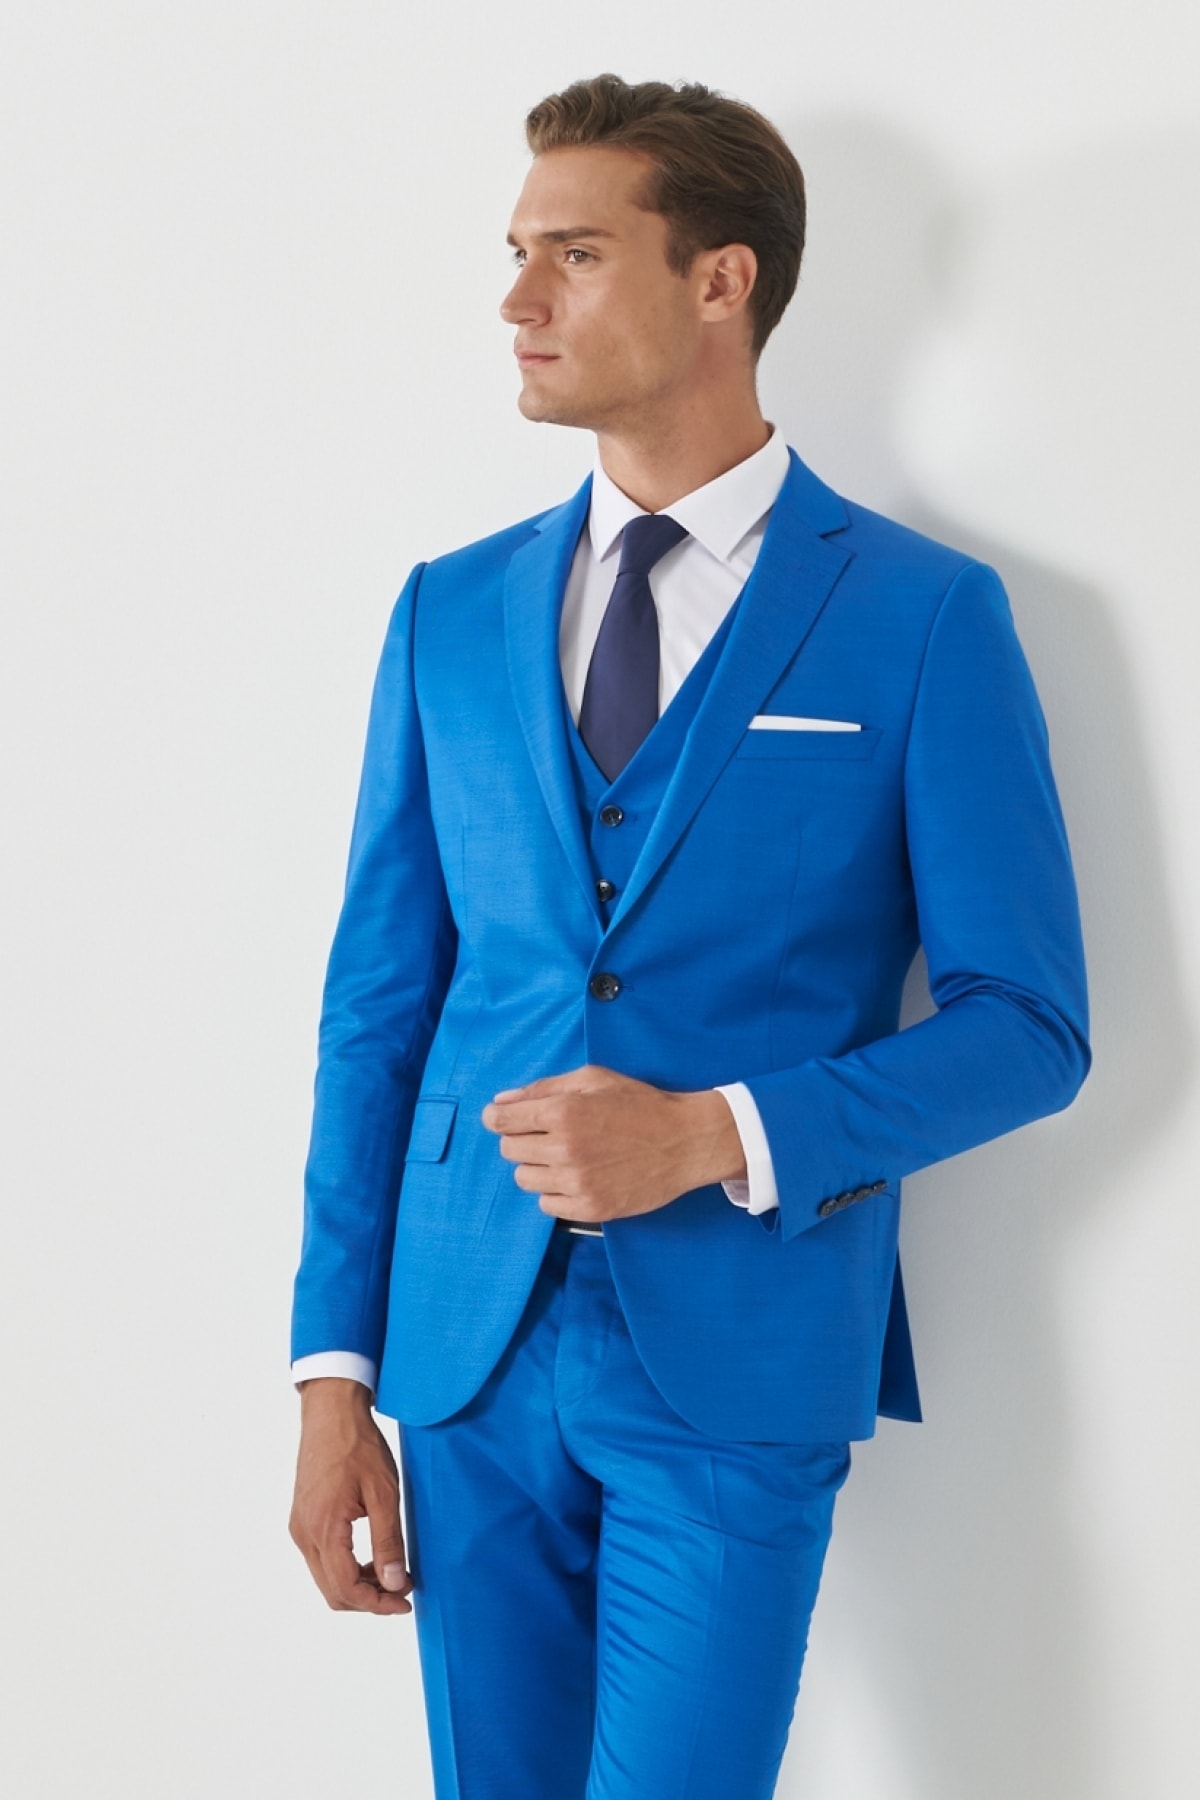 Levně ALTINYILDIZ CLASSICS Pánský sakso-modrý extra slim fit slim fit slim fit jednořadý vzorovaný oblek s vestou.